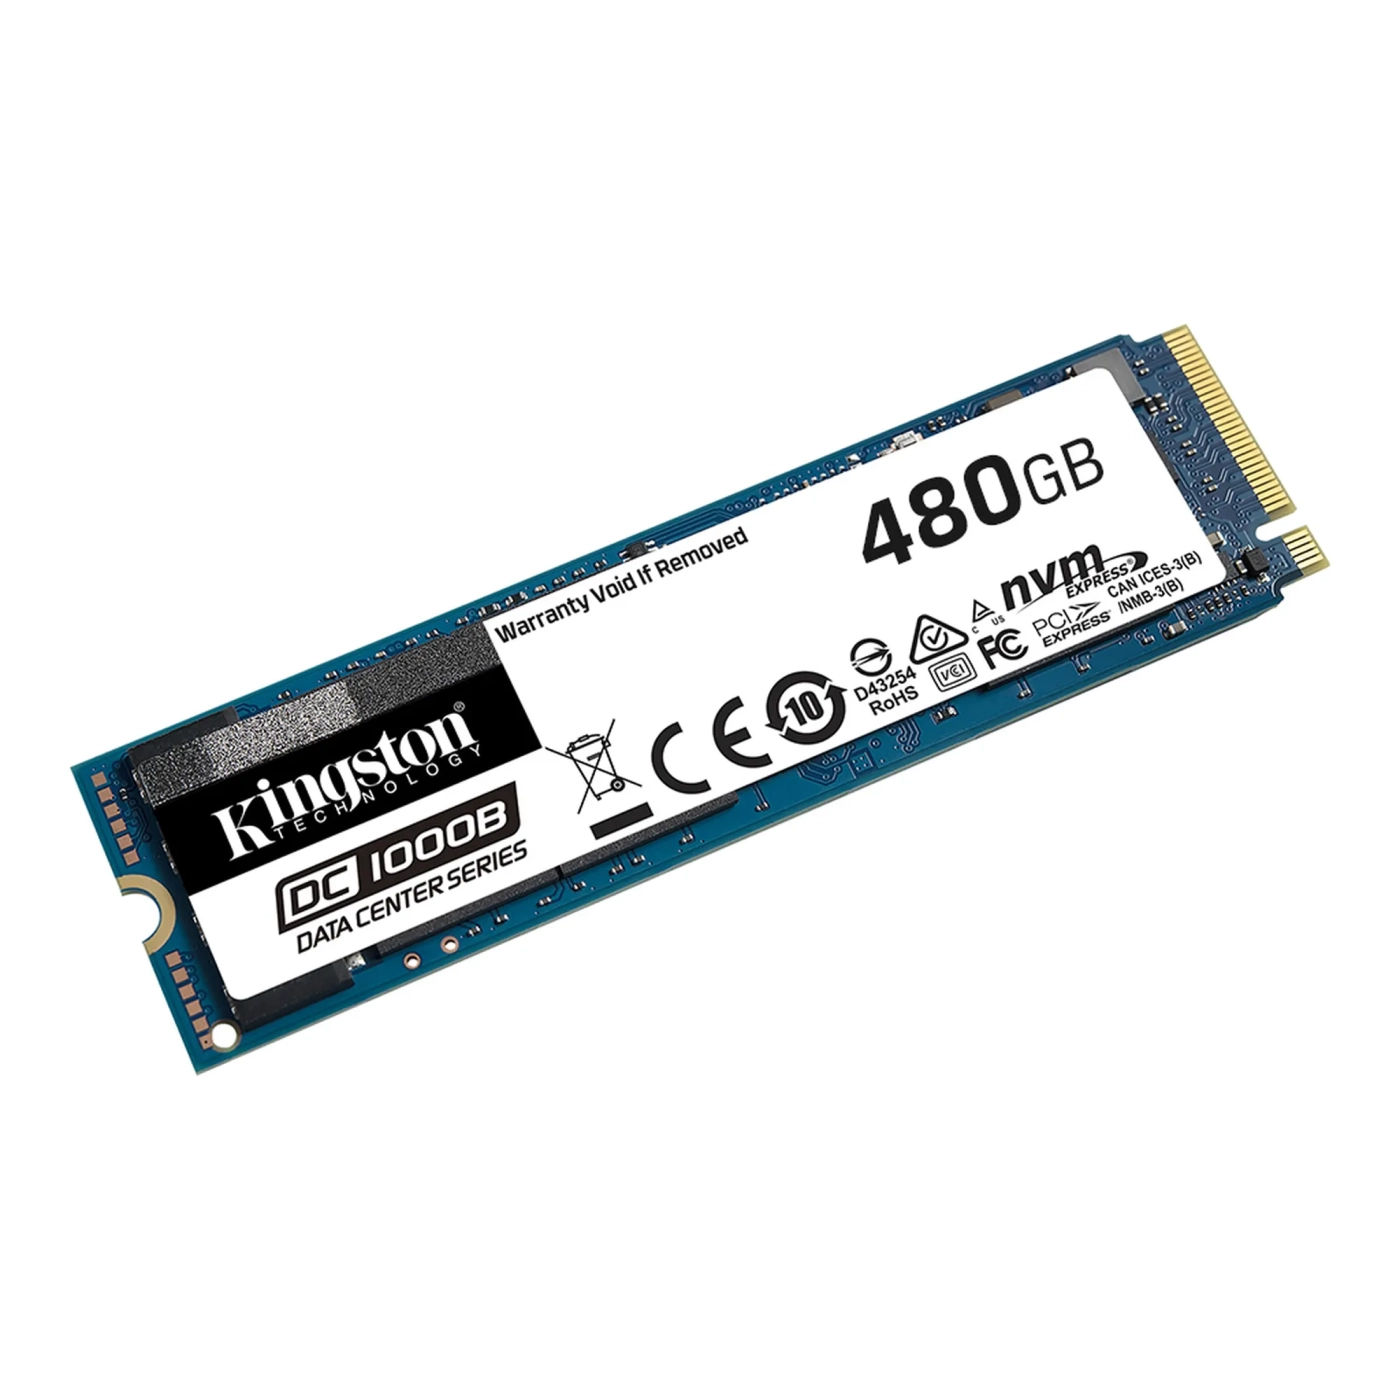 Купить SSD Kingston DC1000B 480GB M.2 - фото 2